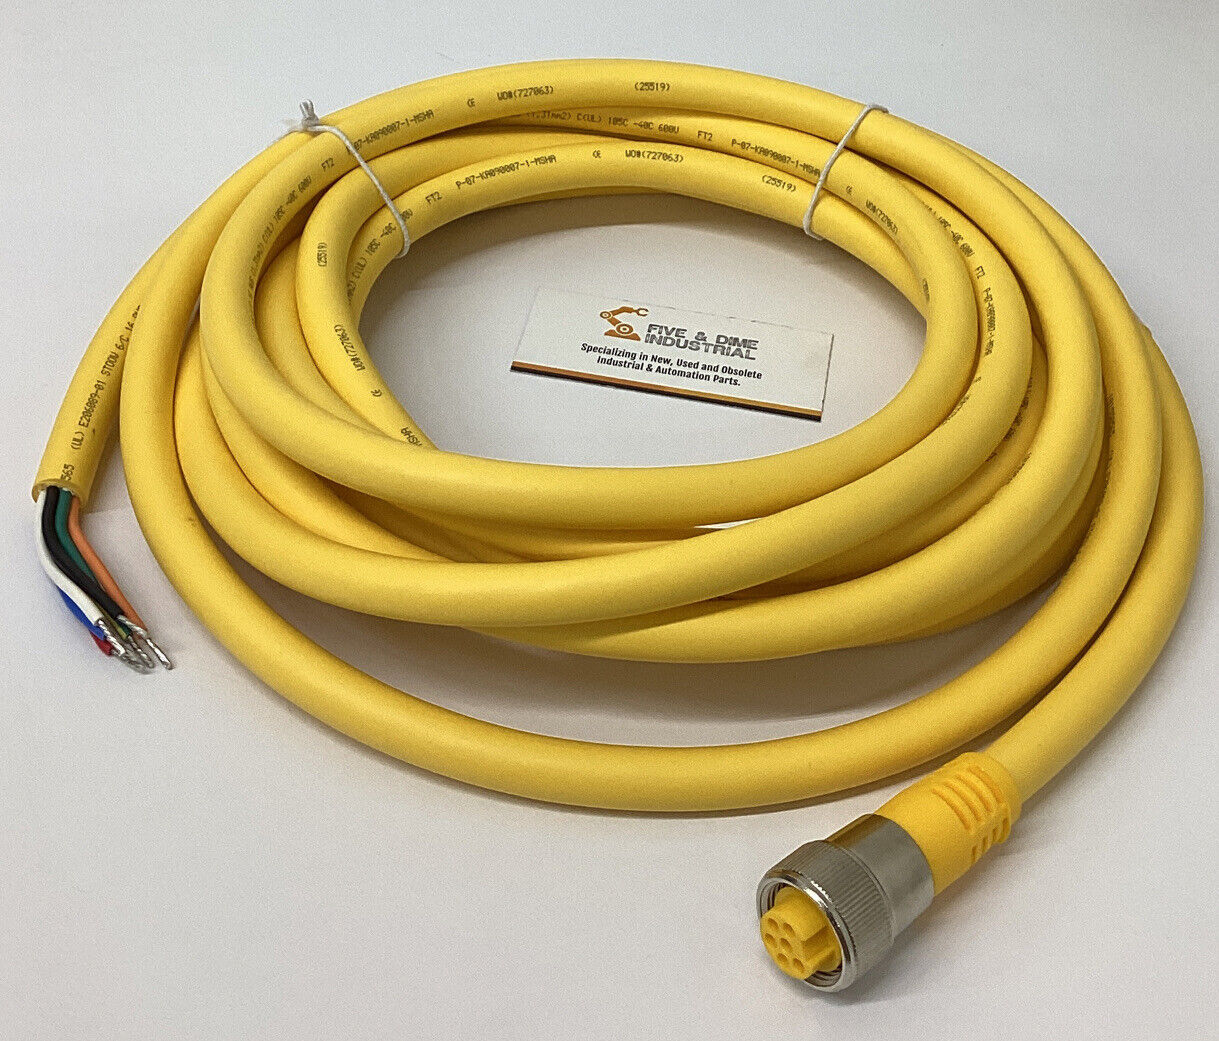 Turck RKM66-6M 6-Pin Female Minifast Cable U5128 6 Meters (CBL131)